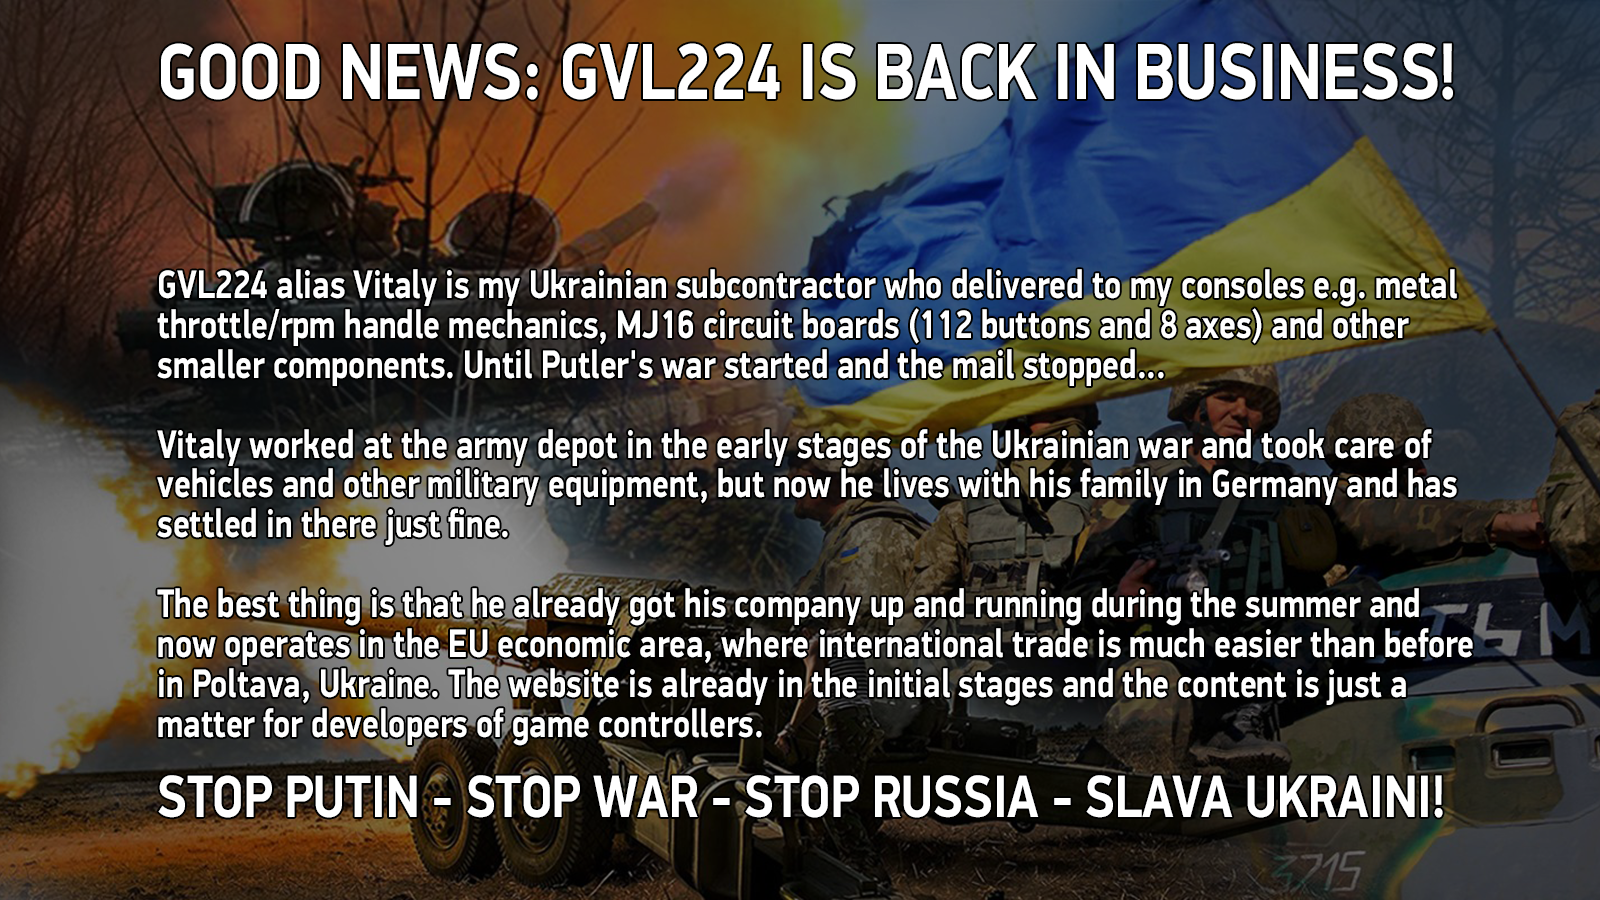 Ukraine Winter War information.